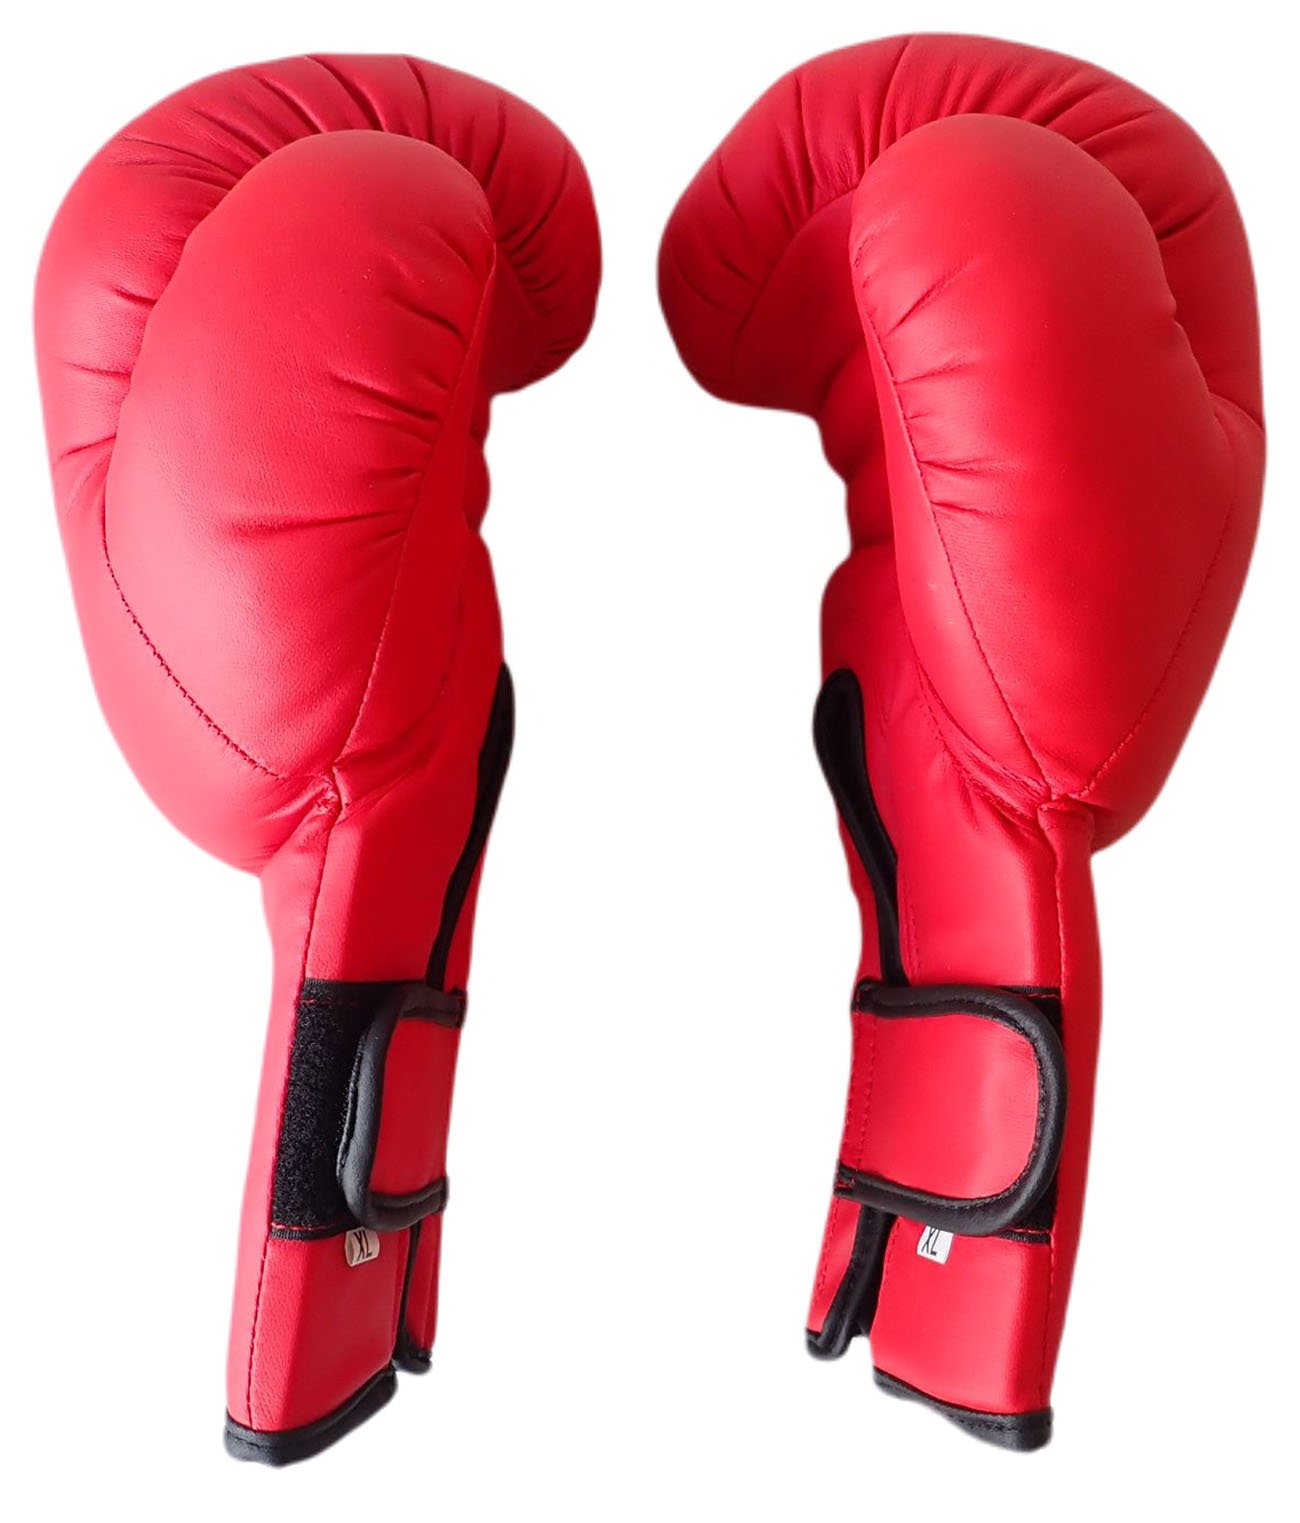 Boxerské rukavice PU kůže vel.XL, 14 oz.